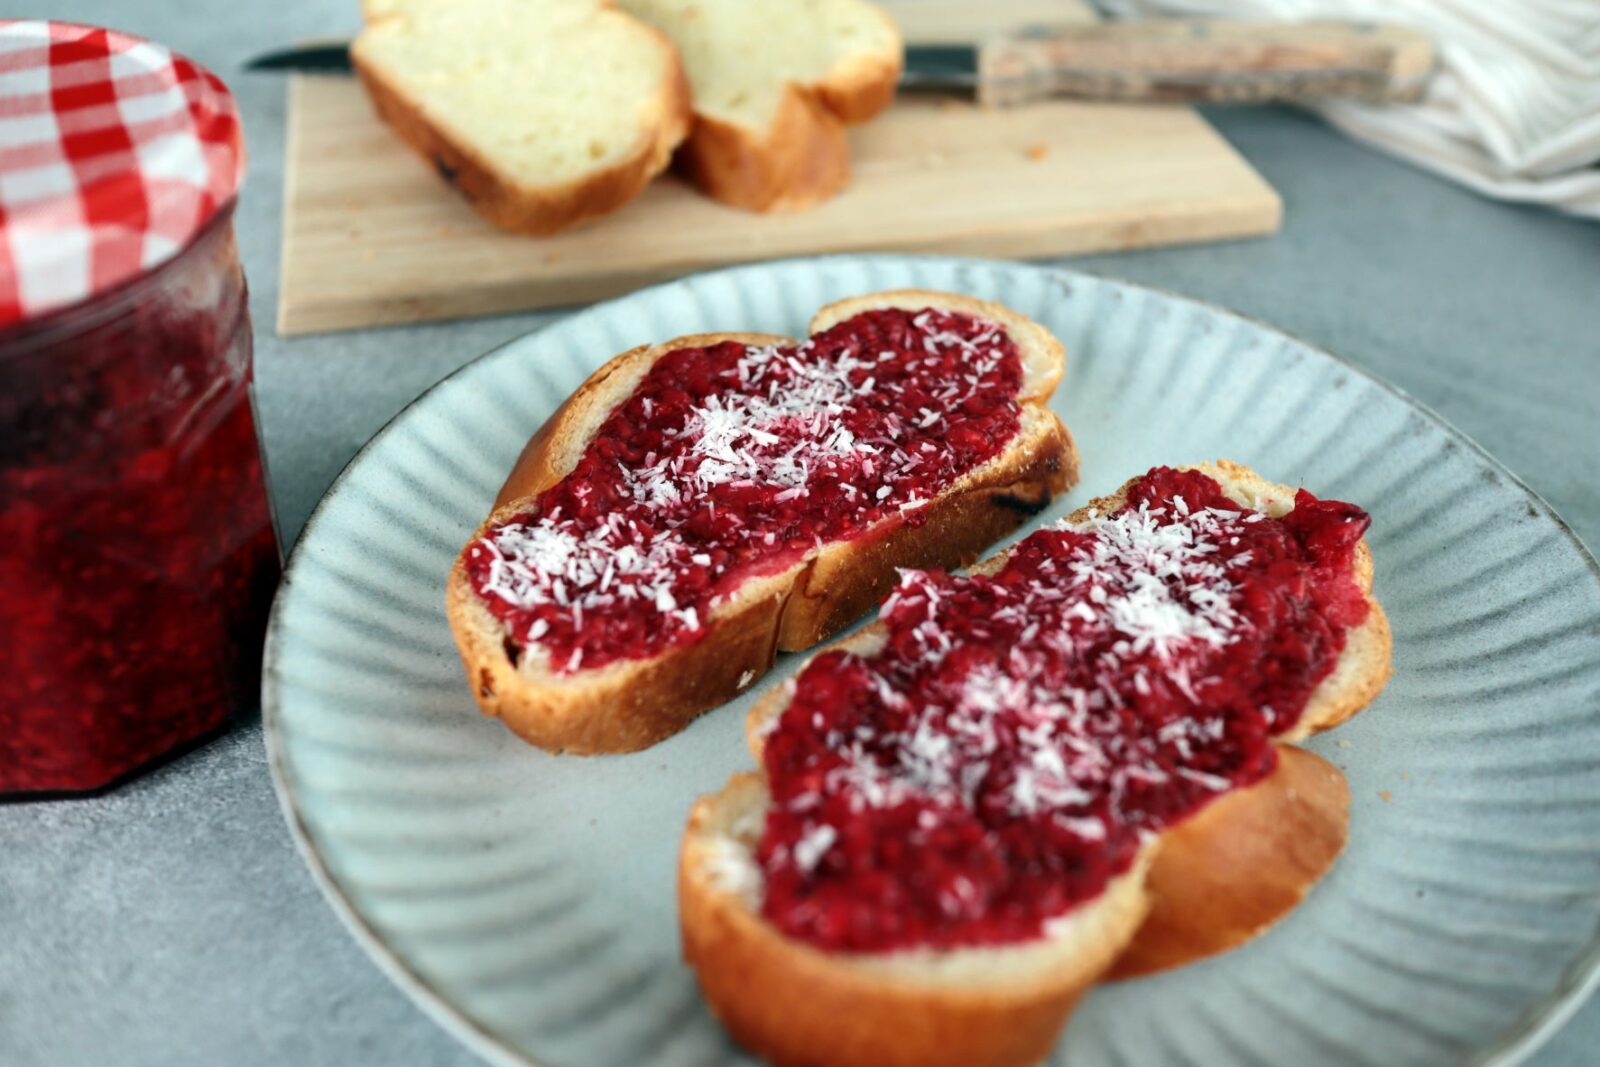 Raspberry chia jam on white bread